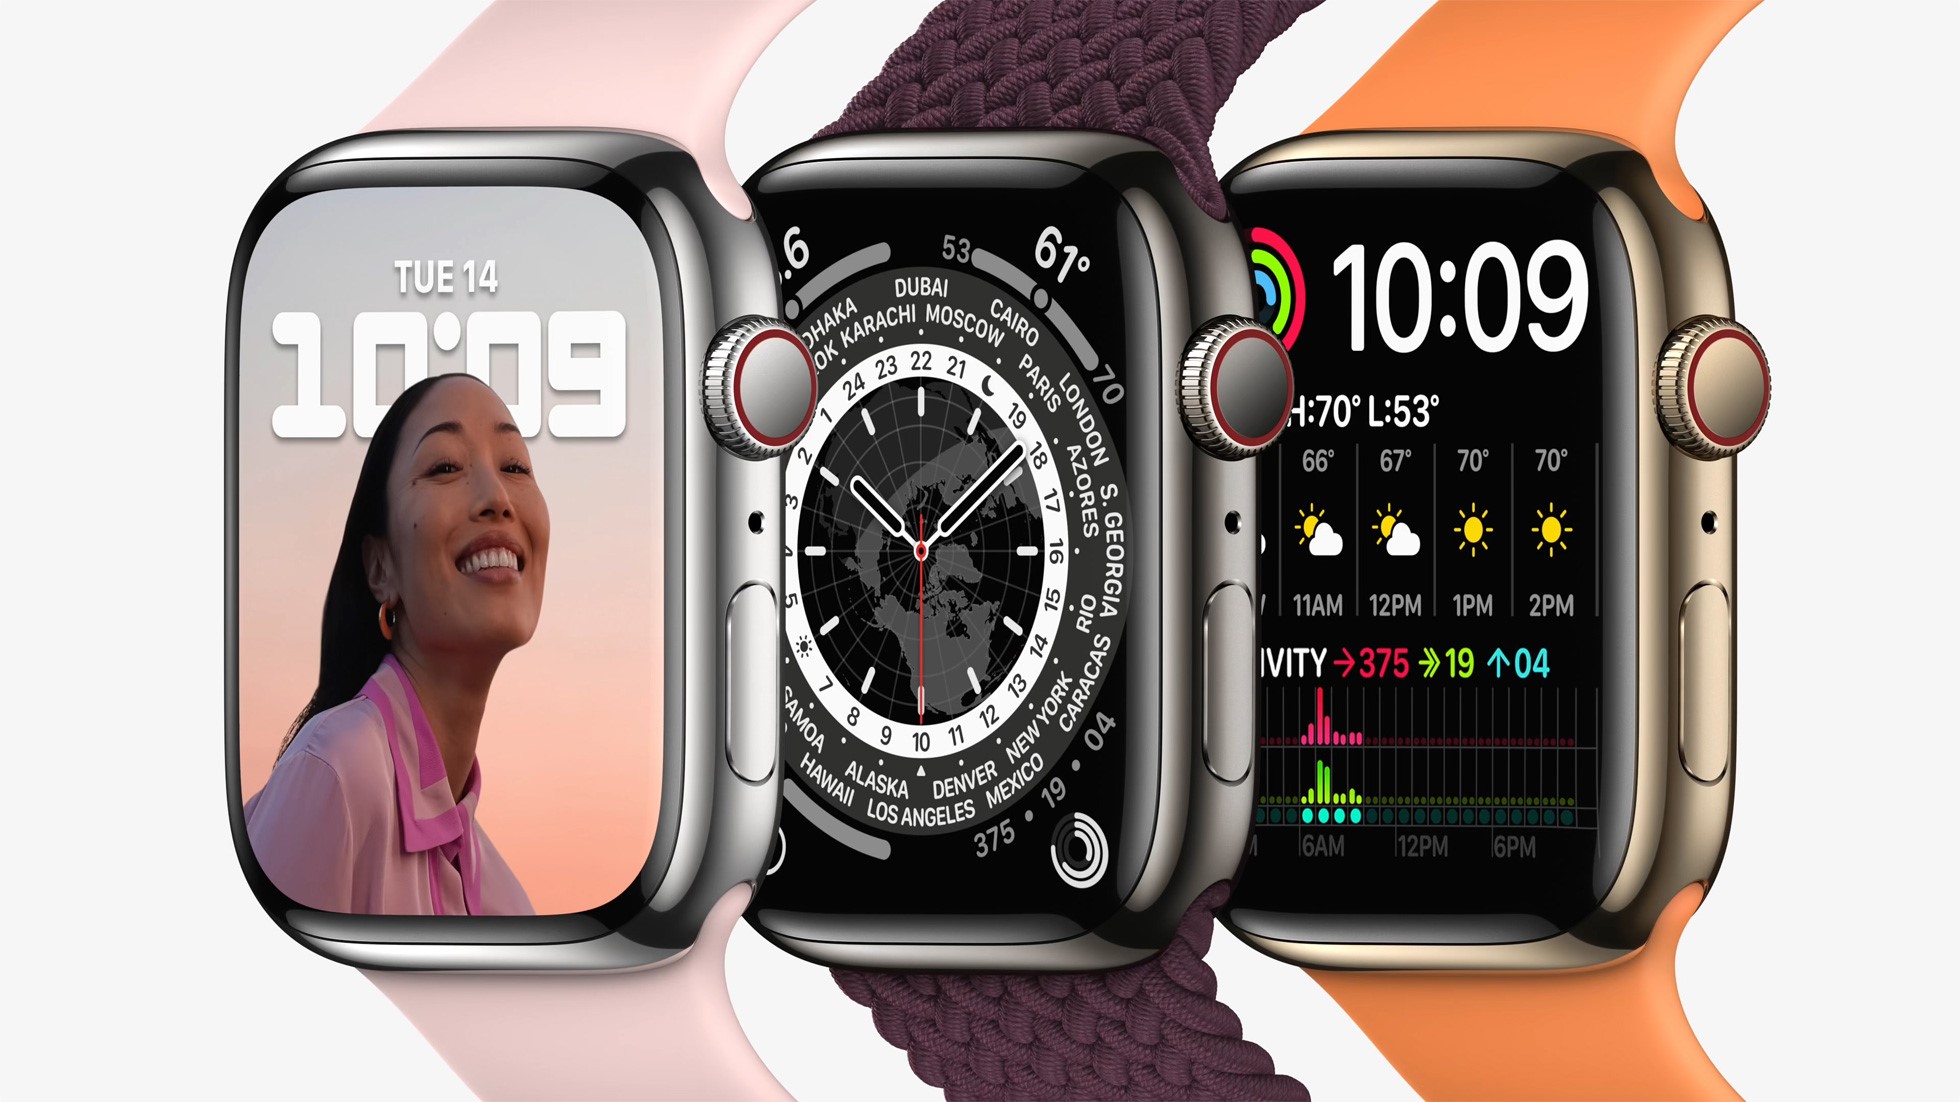 Apple Watch bleibt rund, kriegt grösseres Display